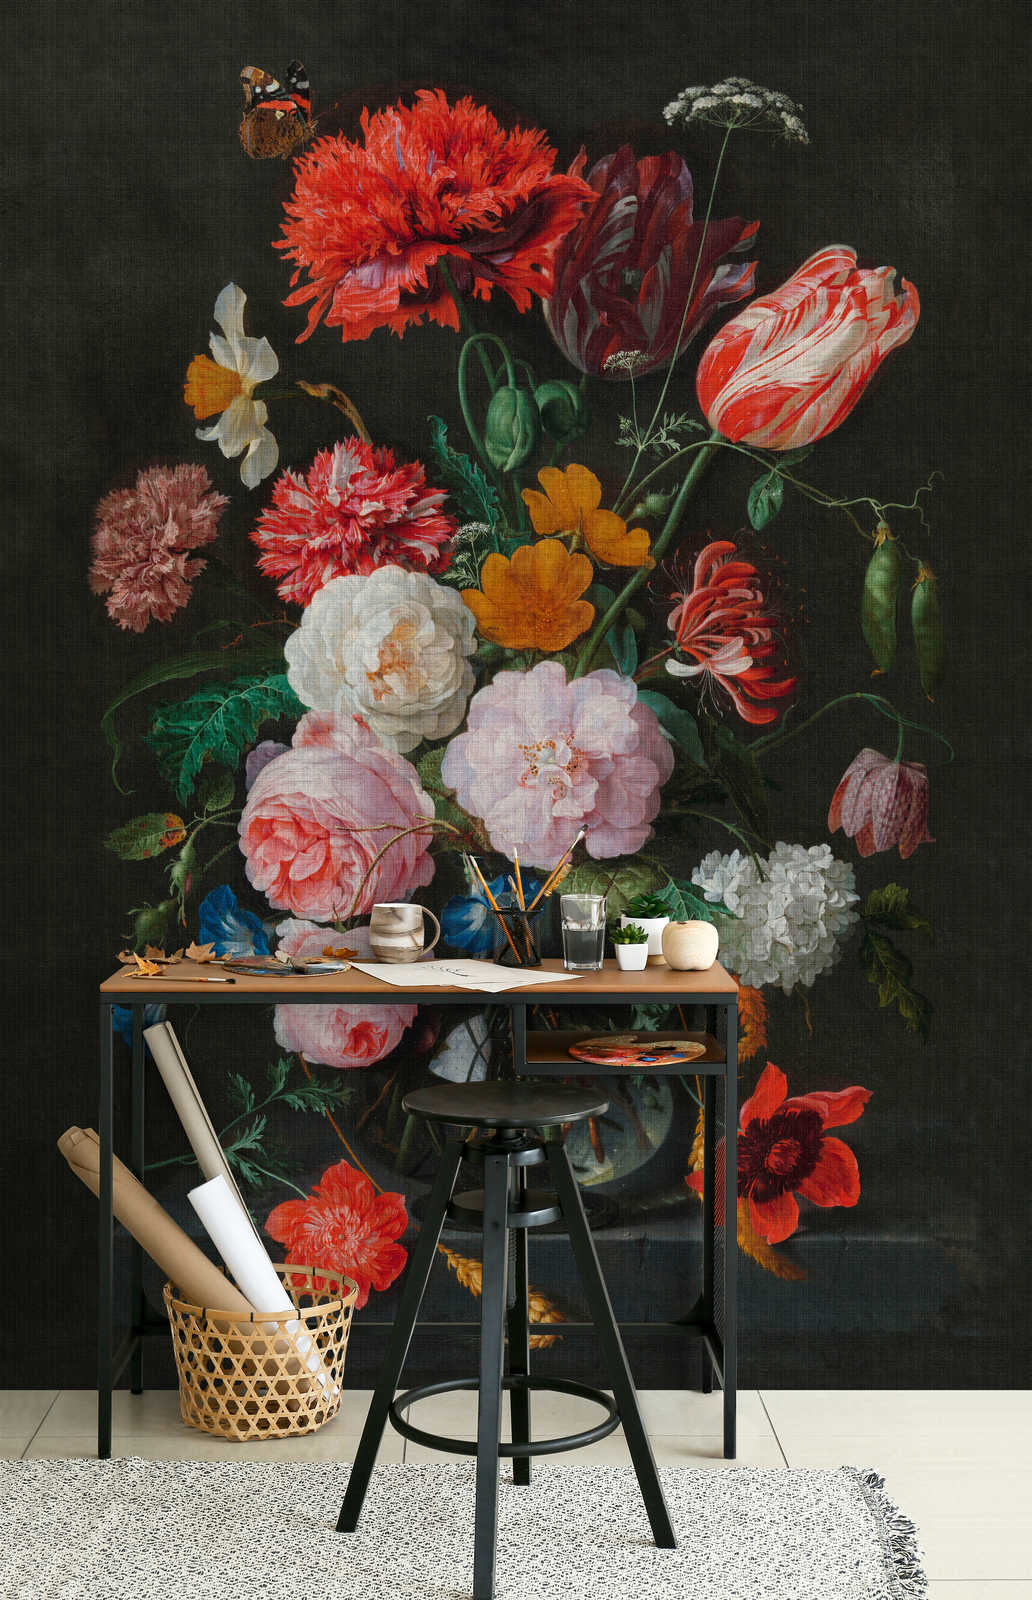             Artists Studio 4 – Fototapete Blumen Stillleben mit Rosen
        